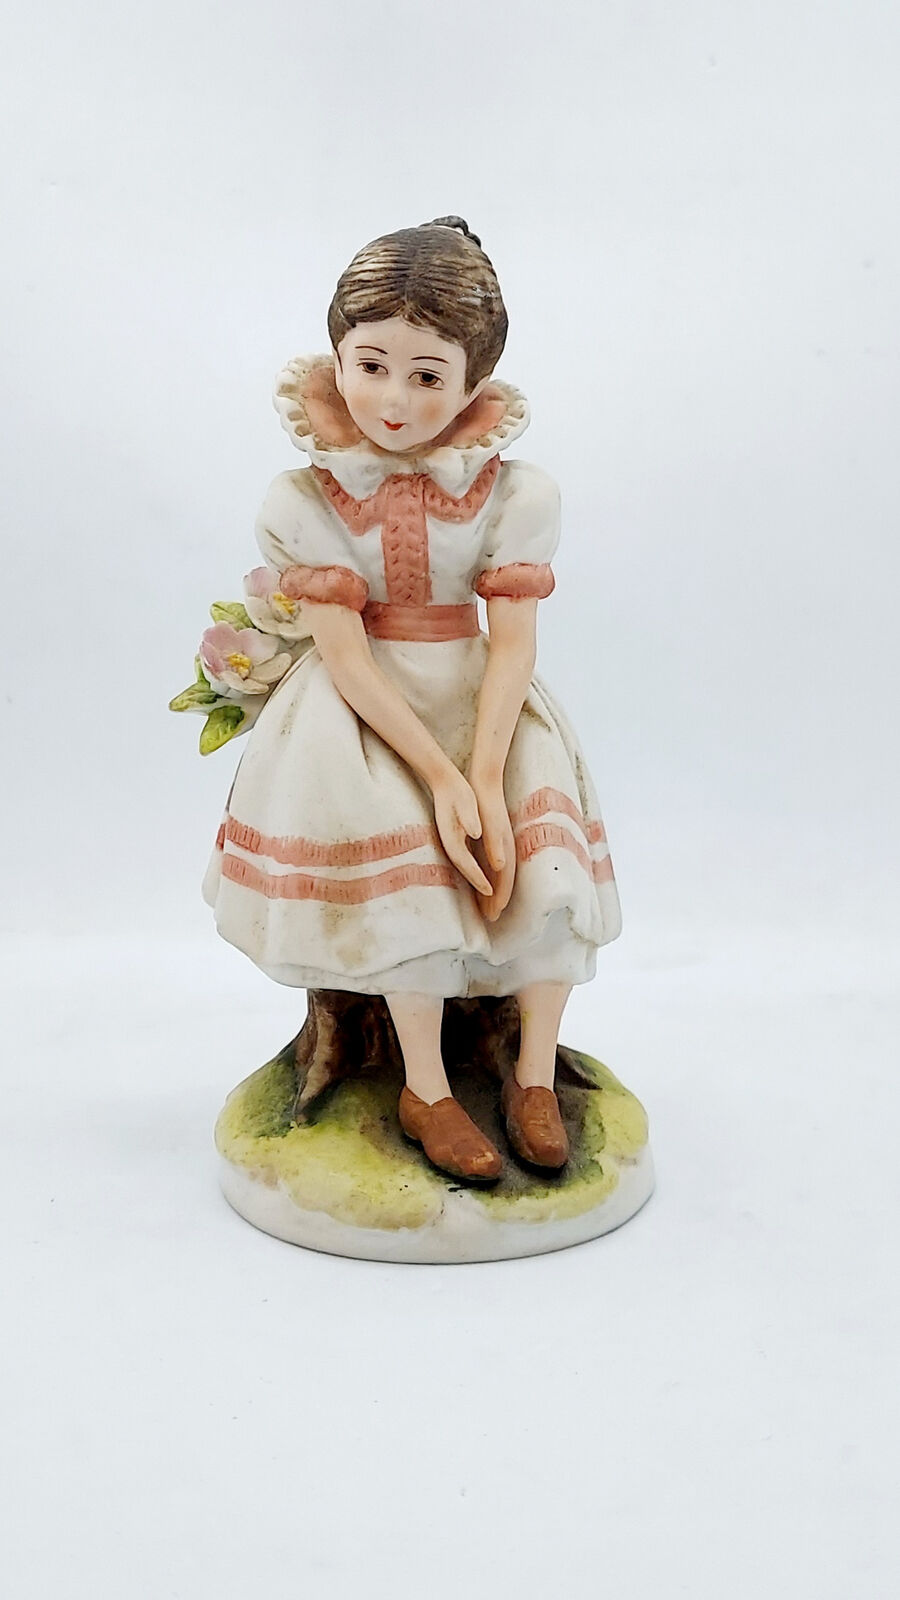 Vintage Lefton Girl Figurine Porcelain Sitting Becky Thatcher KW844